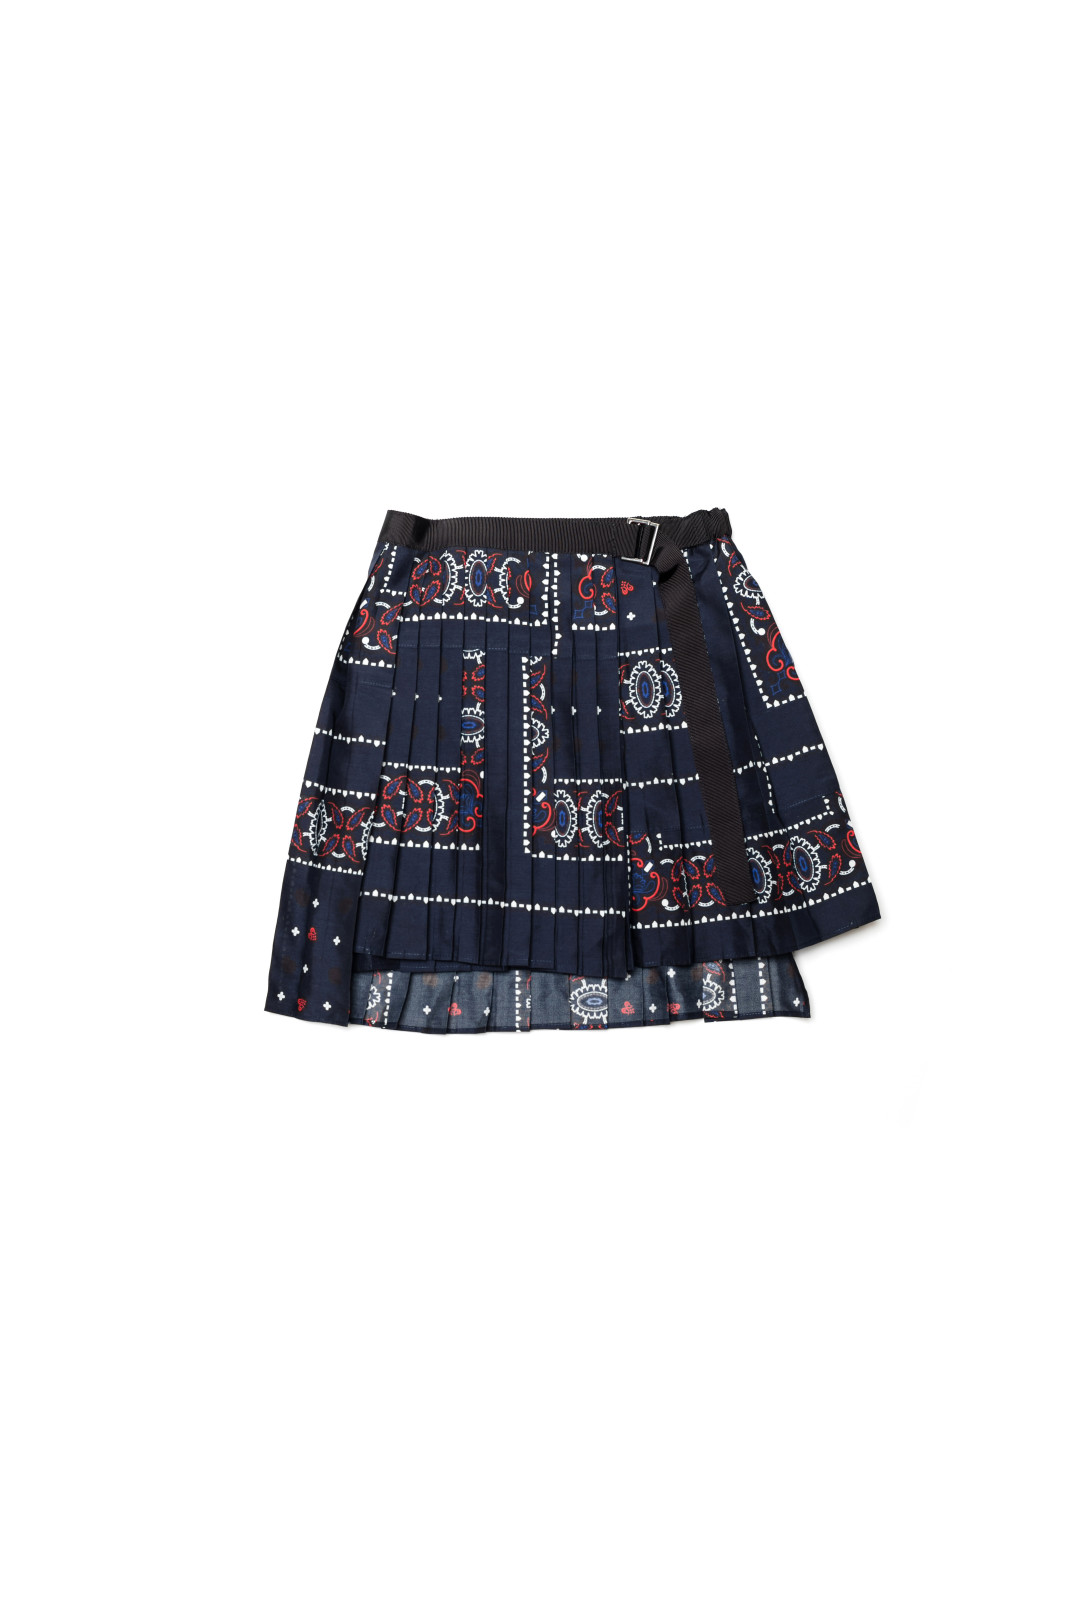 Skirt 17-00022K/Navy 3万8,000円